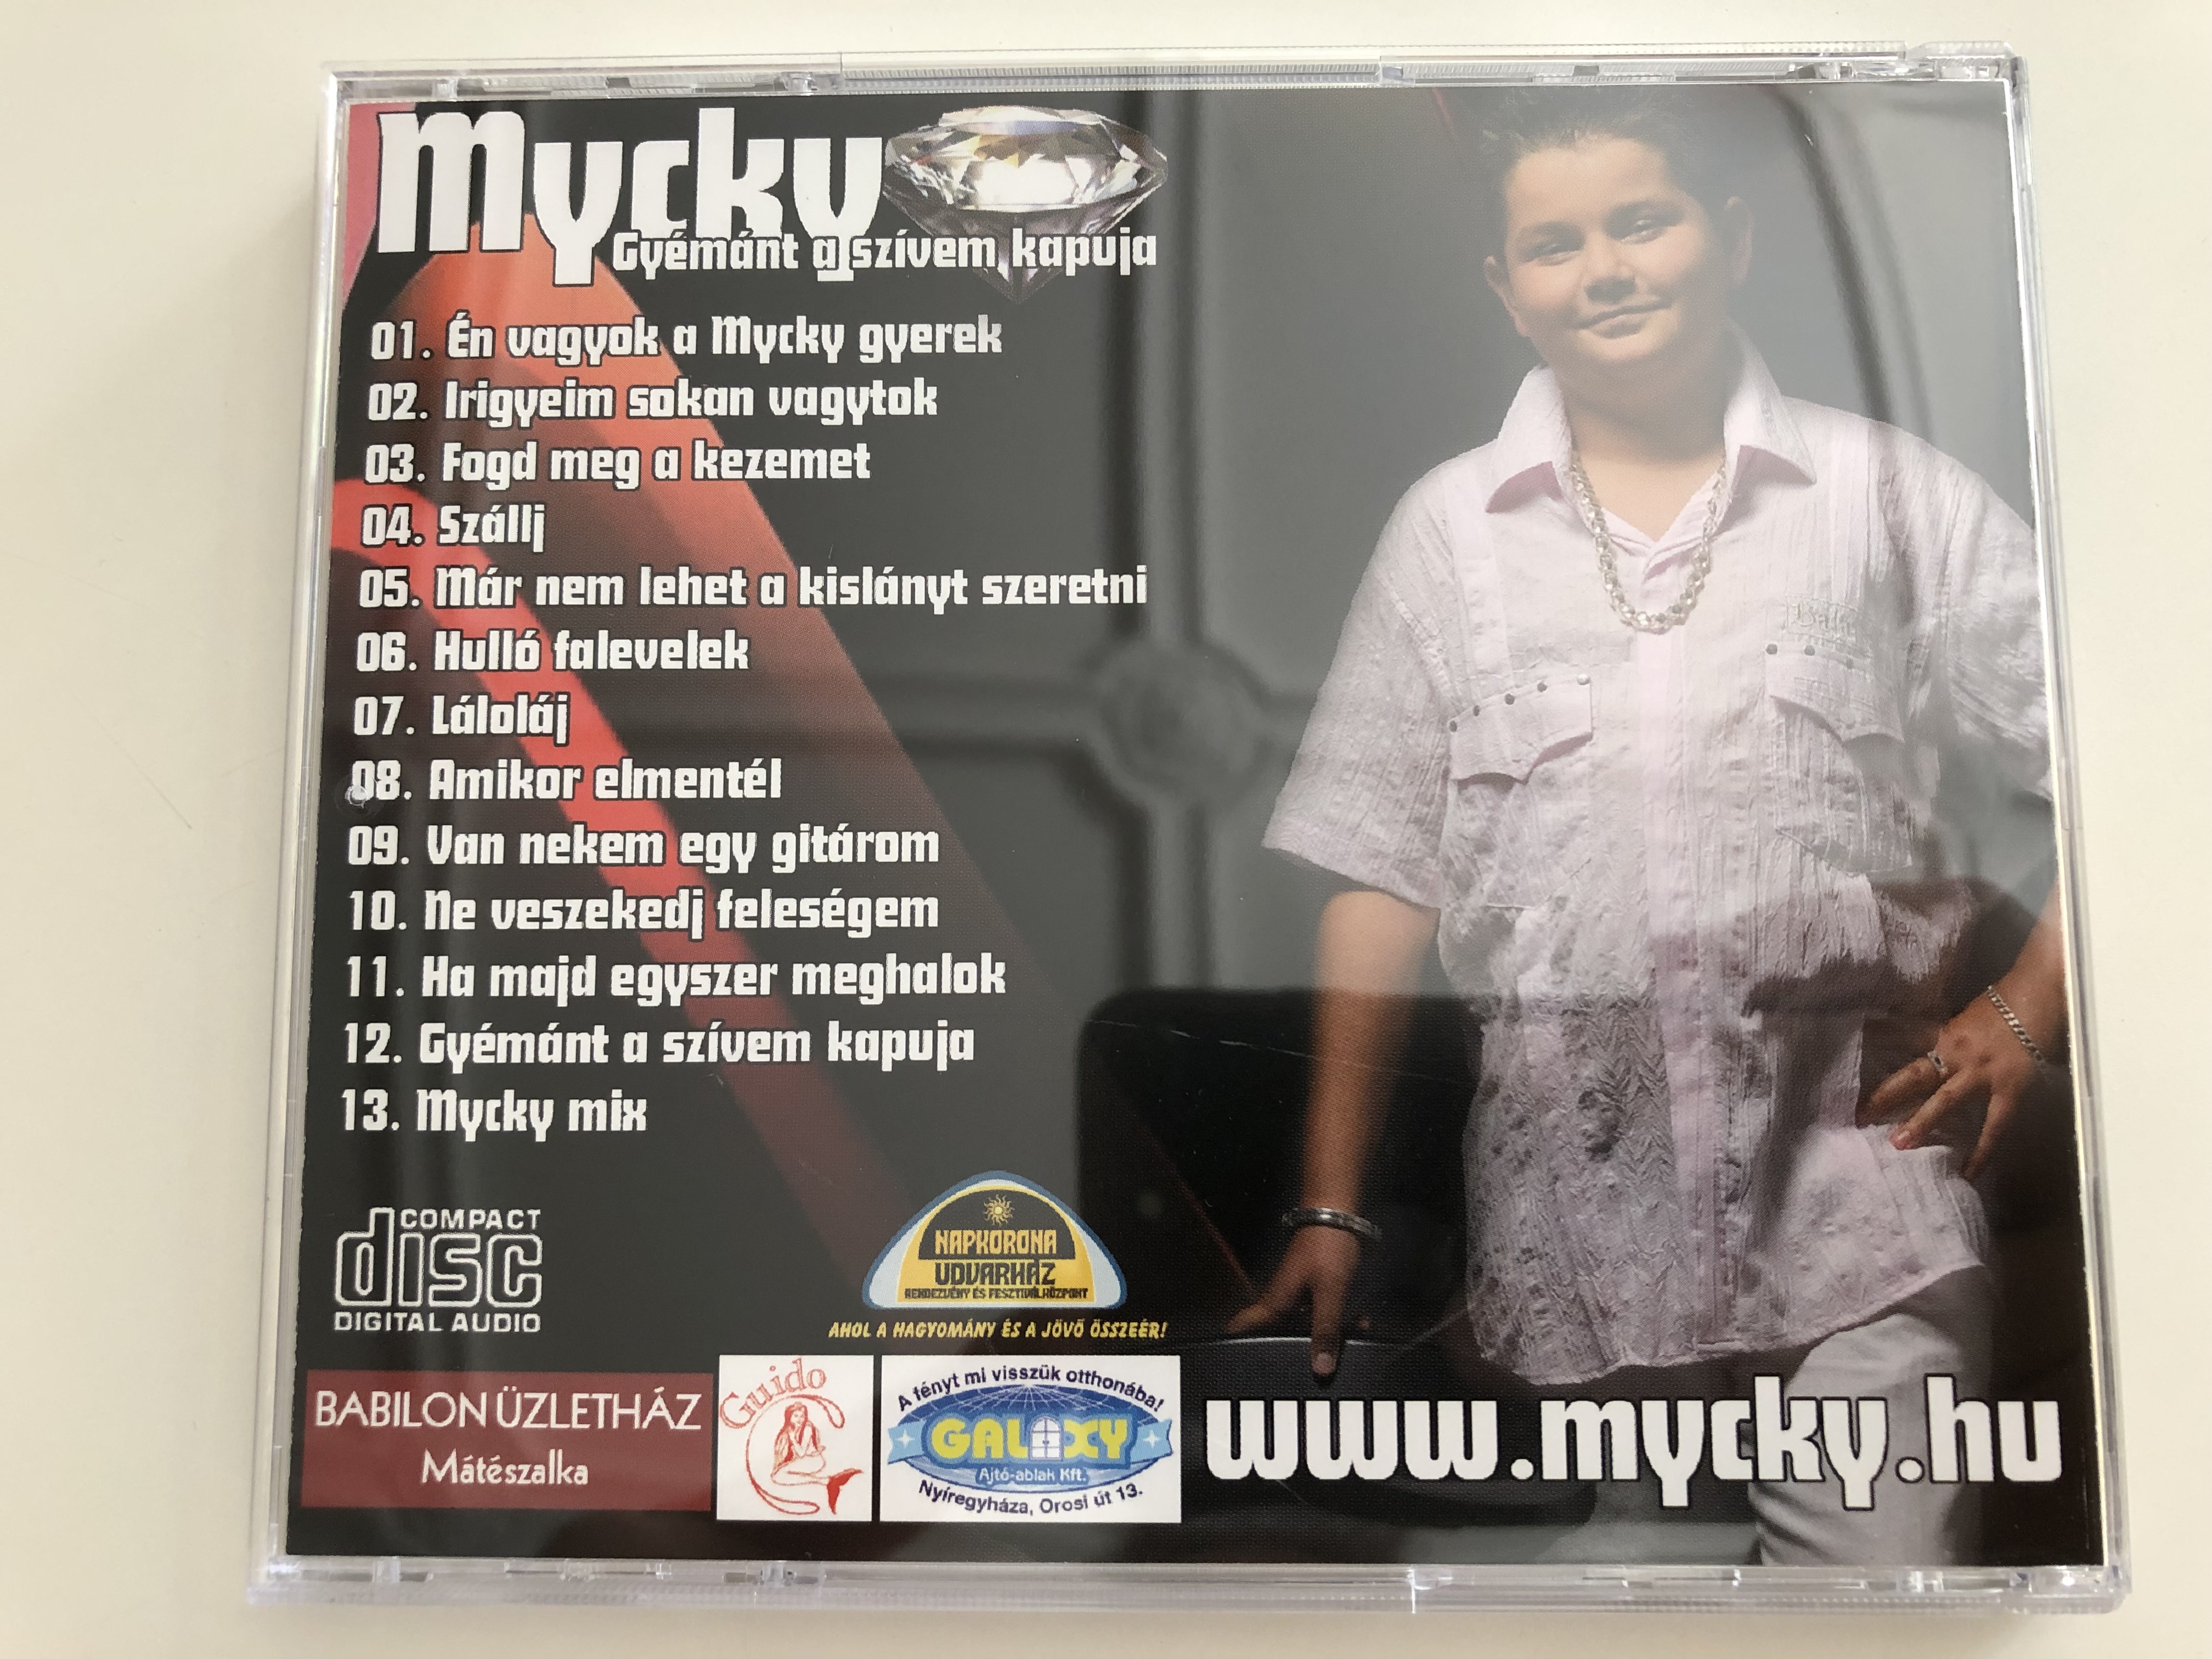 -mycky-gy-m-nt-a-sz-vem-kapuja-n-vagyok-a-mycky-gyerek-fogd-meg-a-kezemet-amikor-elment-l-audio-cd-4-.jpg